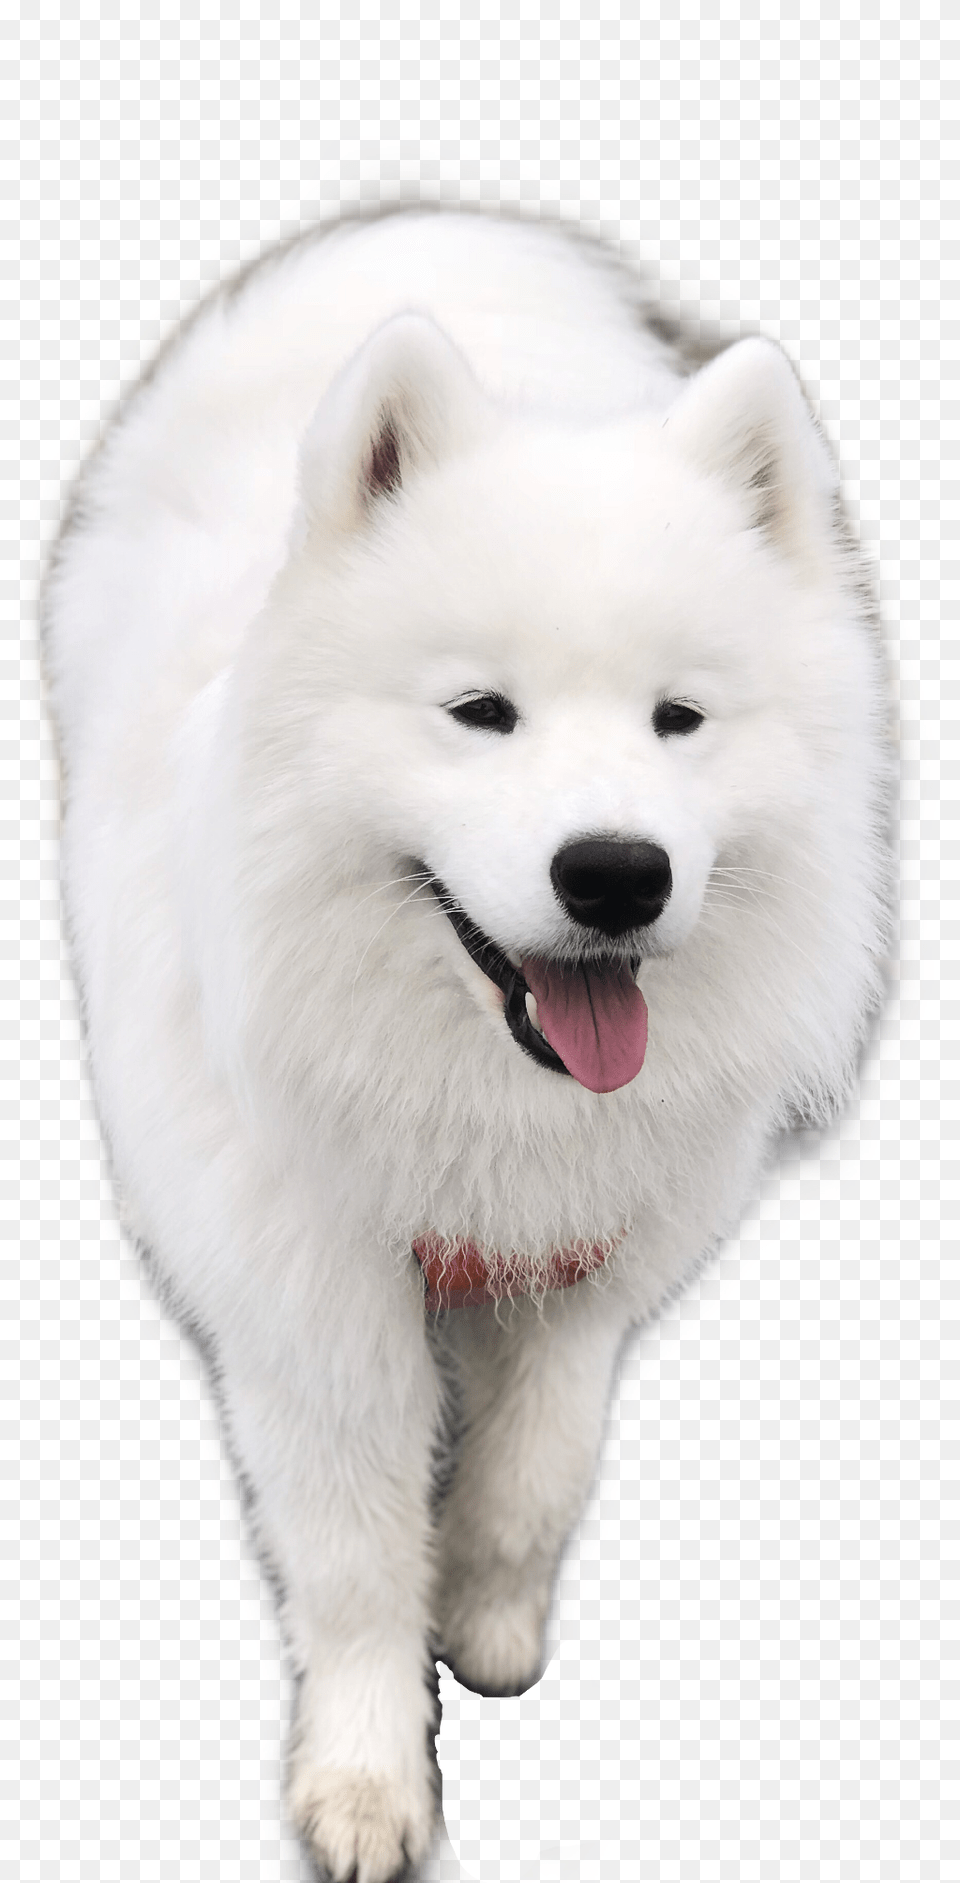 Samoyed Dog Puppy Freetoedit American Eskimo Dog, Animal, Canine, Mammal, Pet Png Image